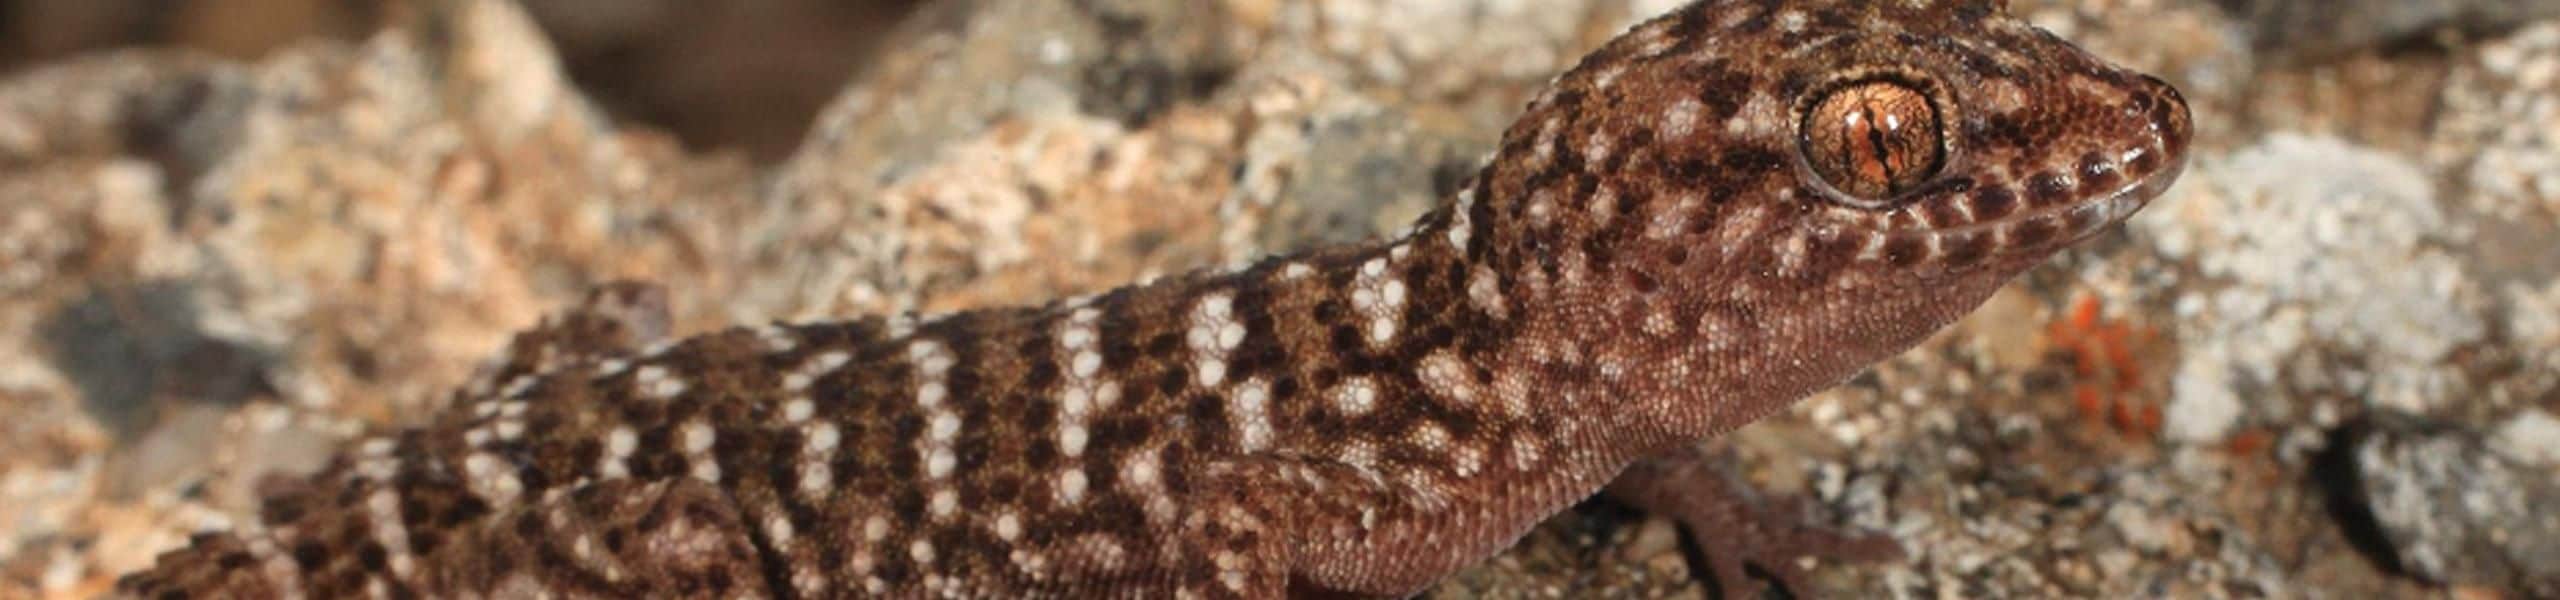 Bynoe’s Gecko - Heteronotia binoei | Paultons Park